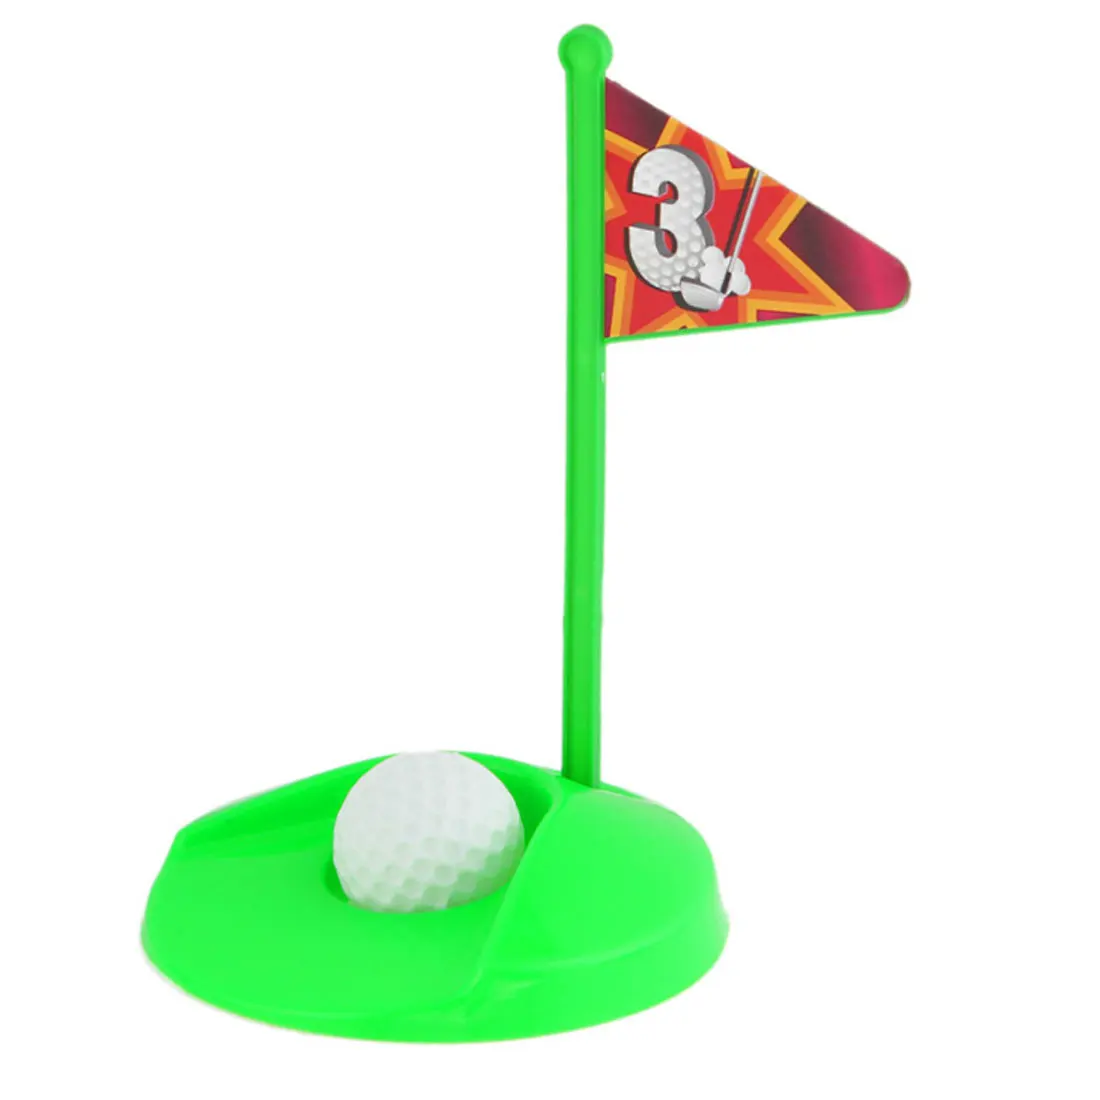 Совершенно новая игра комплект для мини-гольфа положить зеленый гольф в туалете игра для мужчин и женщин практичные шутки